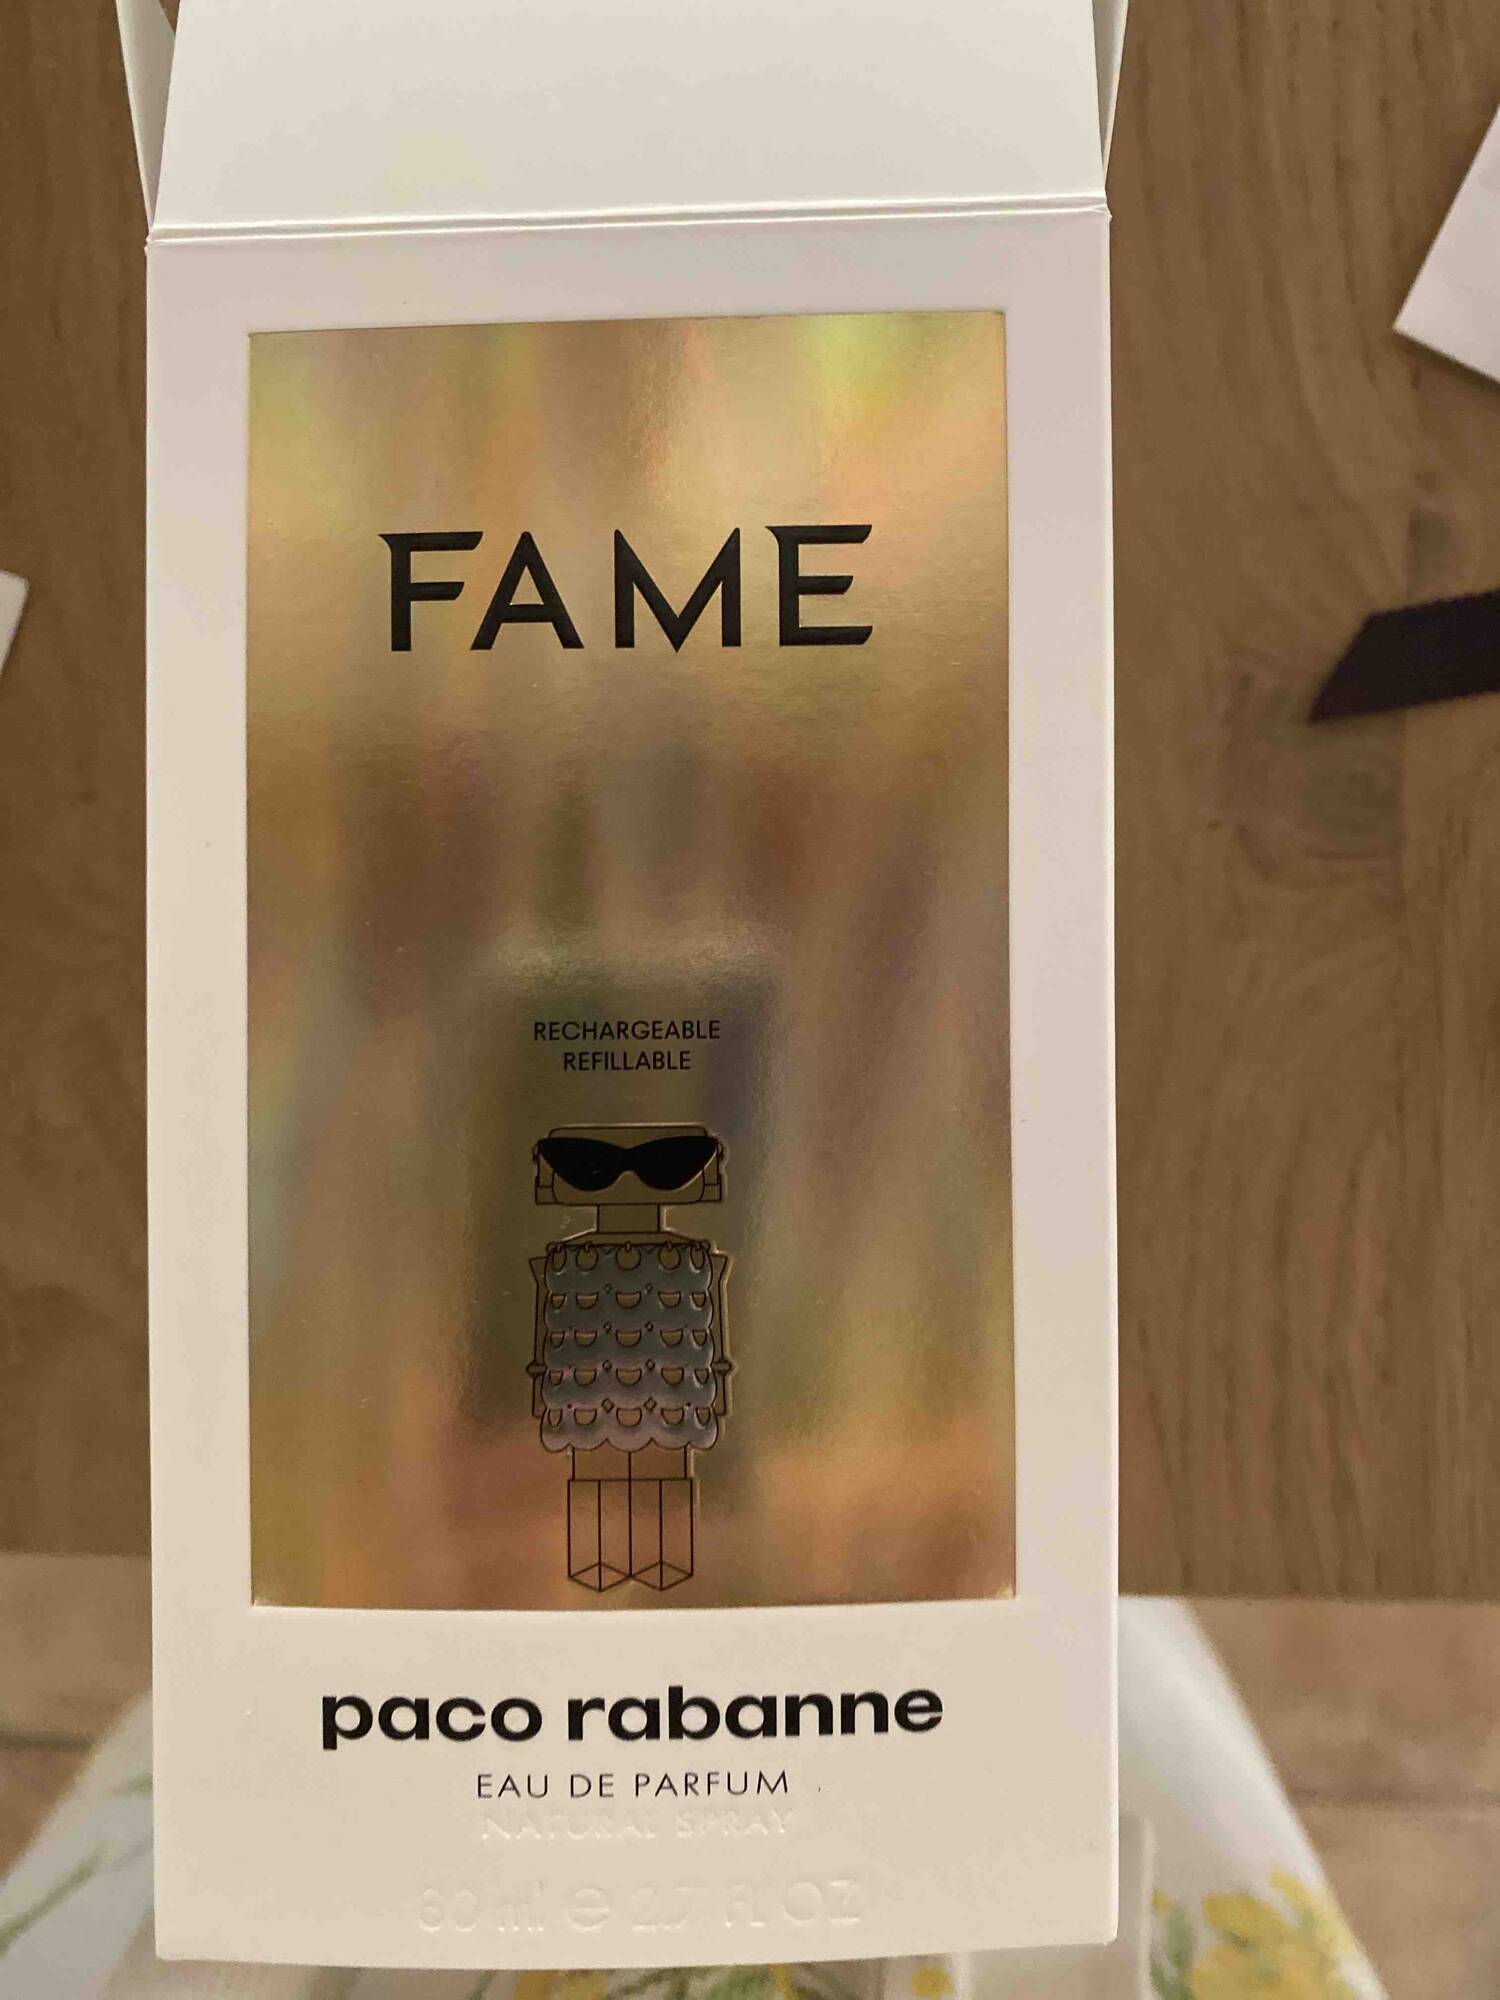 PACO RABANNE - Fame - Eau de parfum